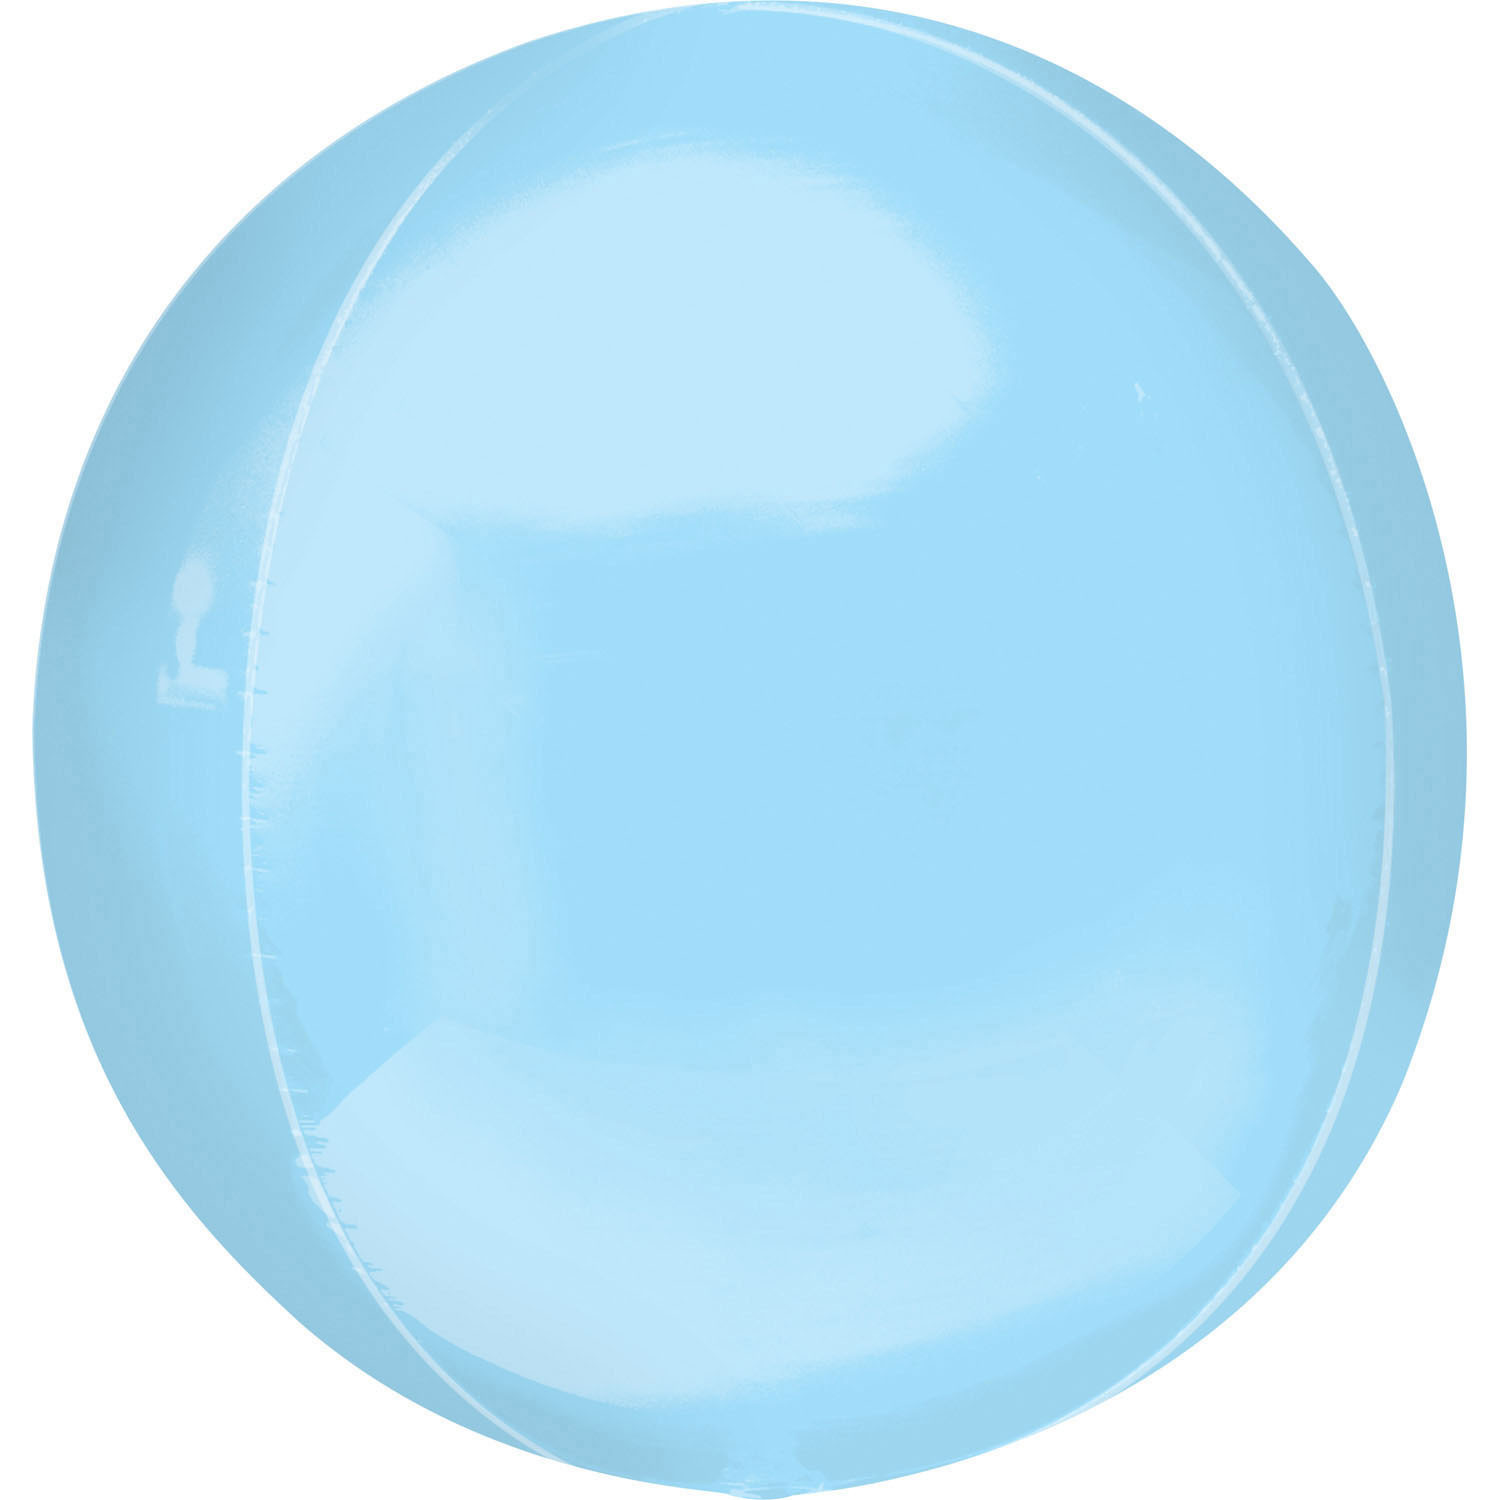 Balon foliowy Orbz - Kula błękitna / 38x40 cm